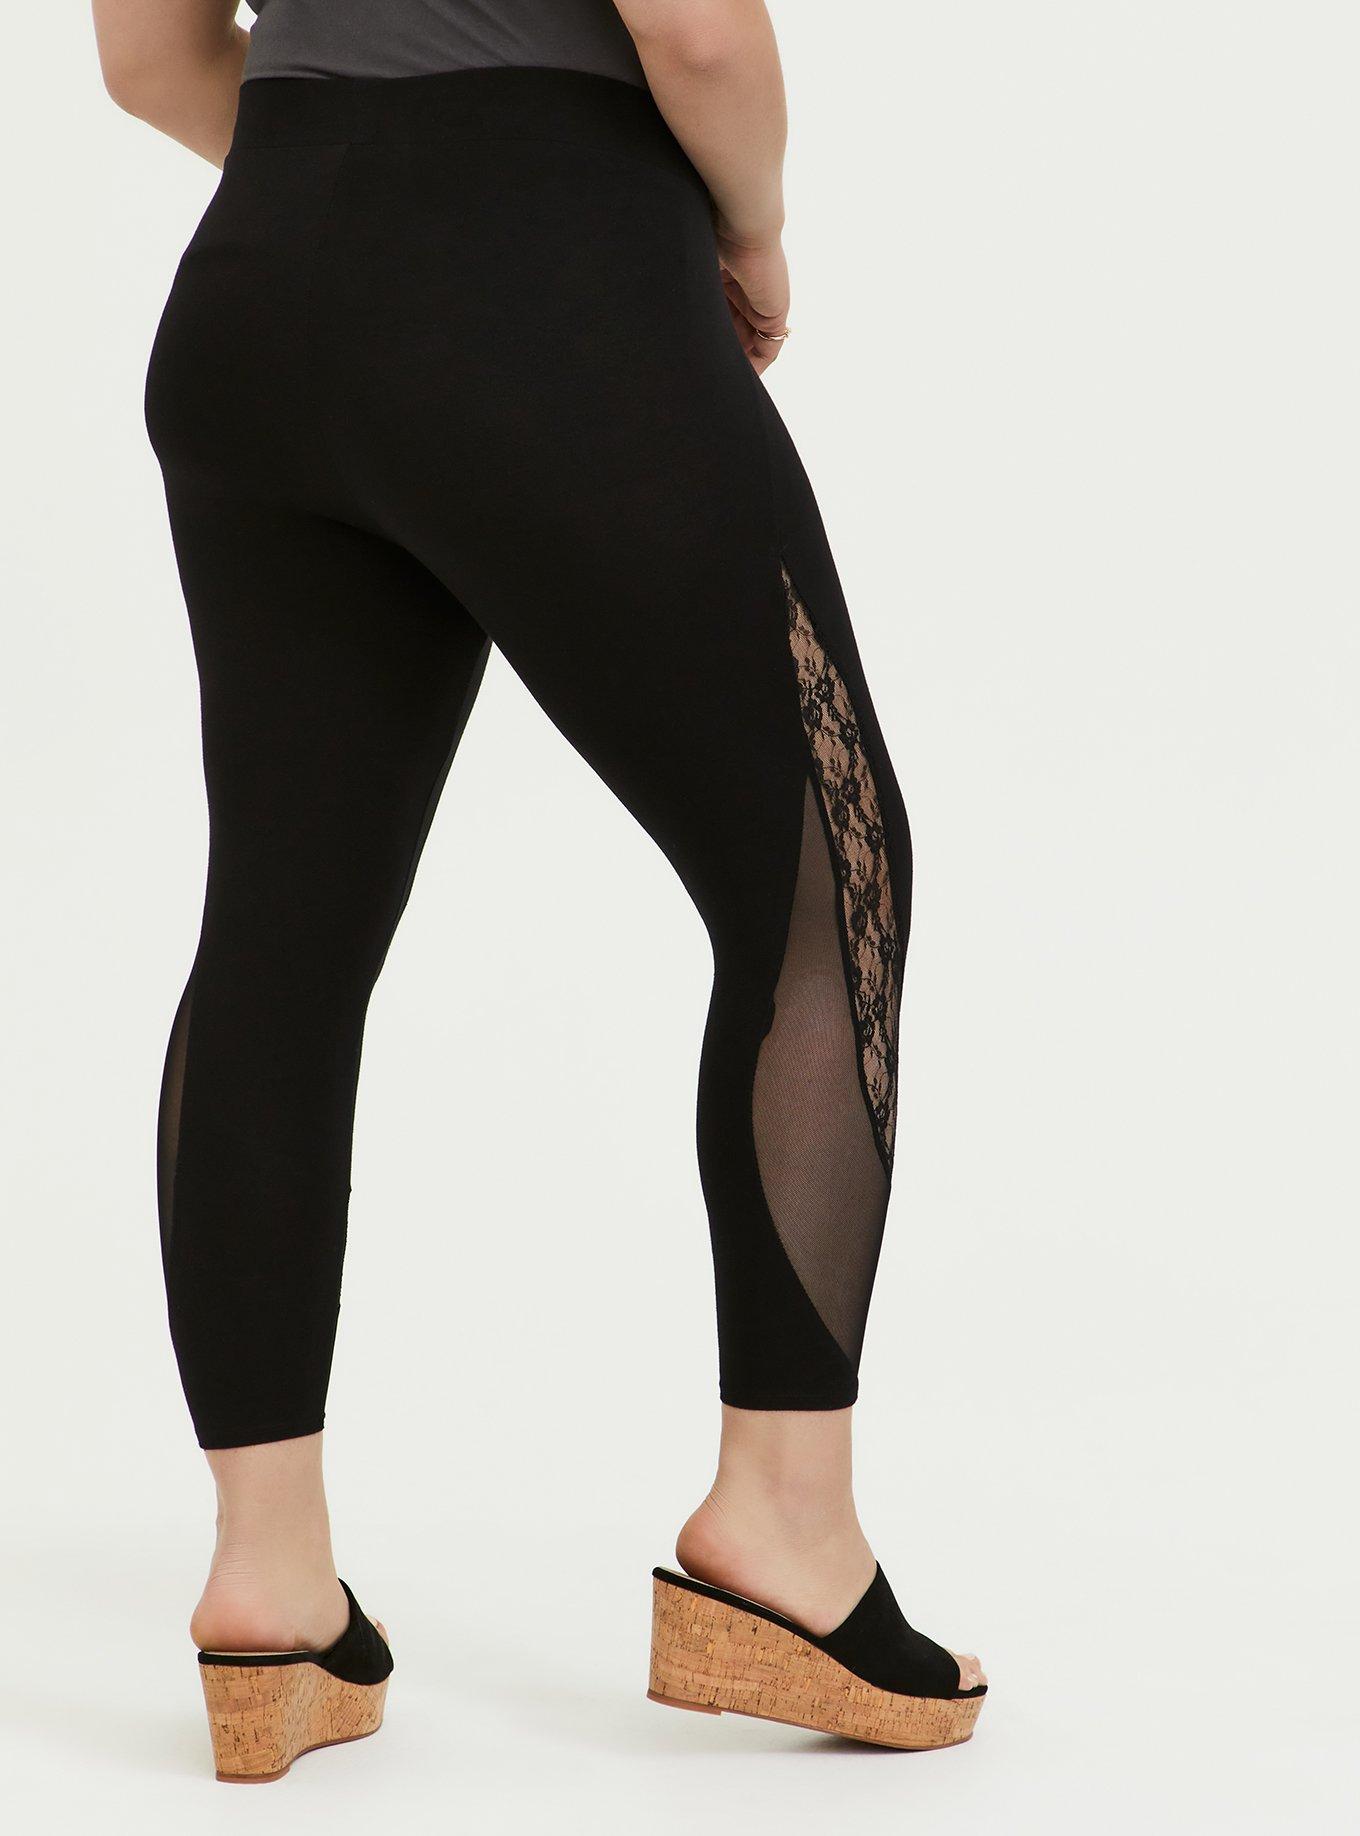 Plus Size - Crop Premium Legging - Mesh & Lace Inset Black - Torrid